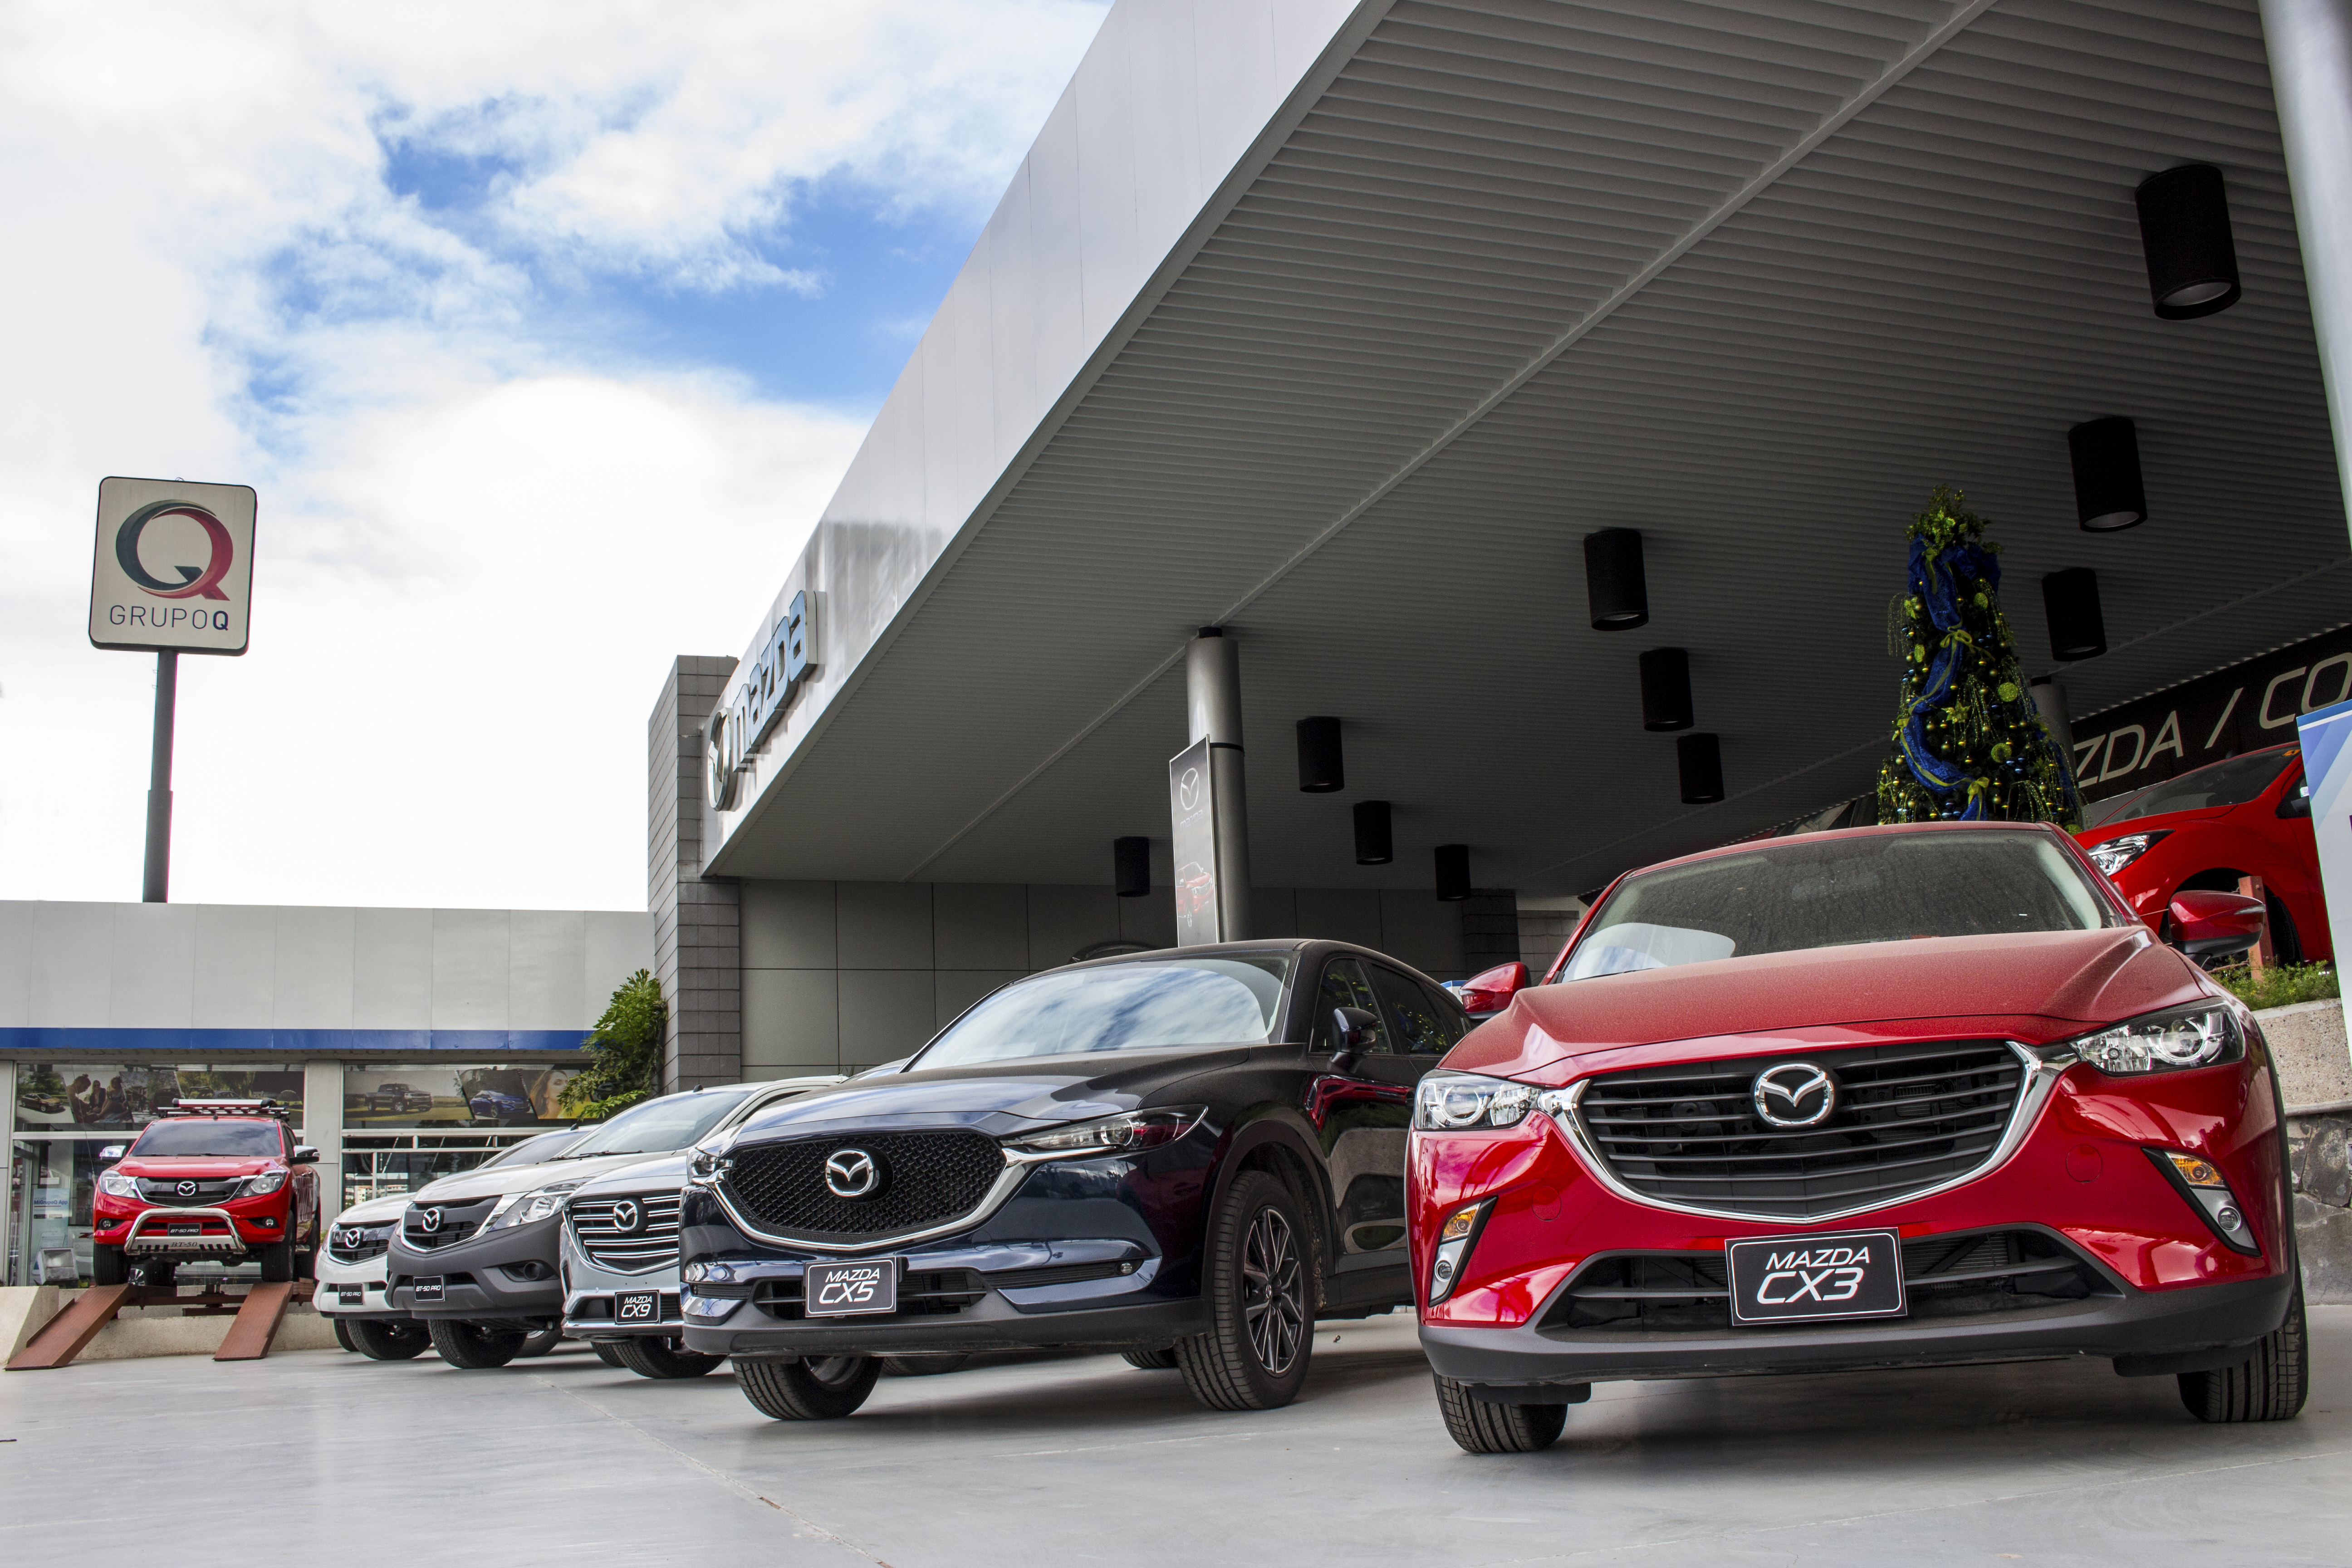 Llega la temporada más esperada por los amantes de Mazda